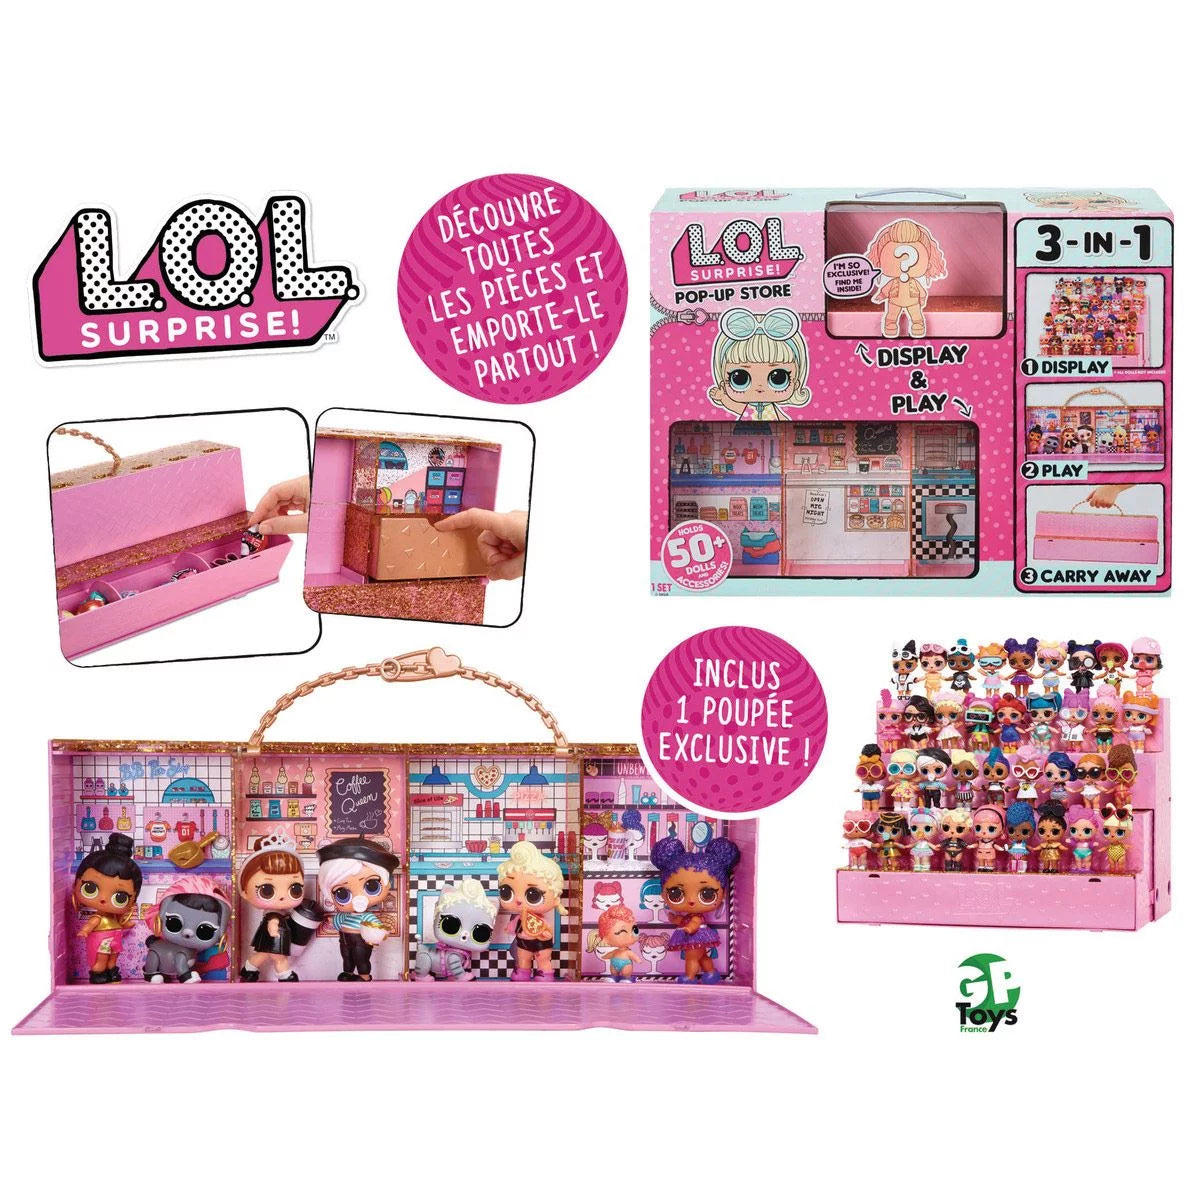 BARBIE Méga coffret Barbie reveal surprise party Frimousse shop –  Frimousse-shop